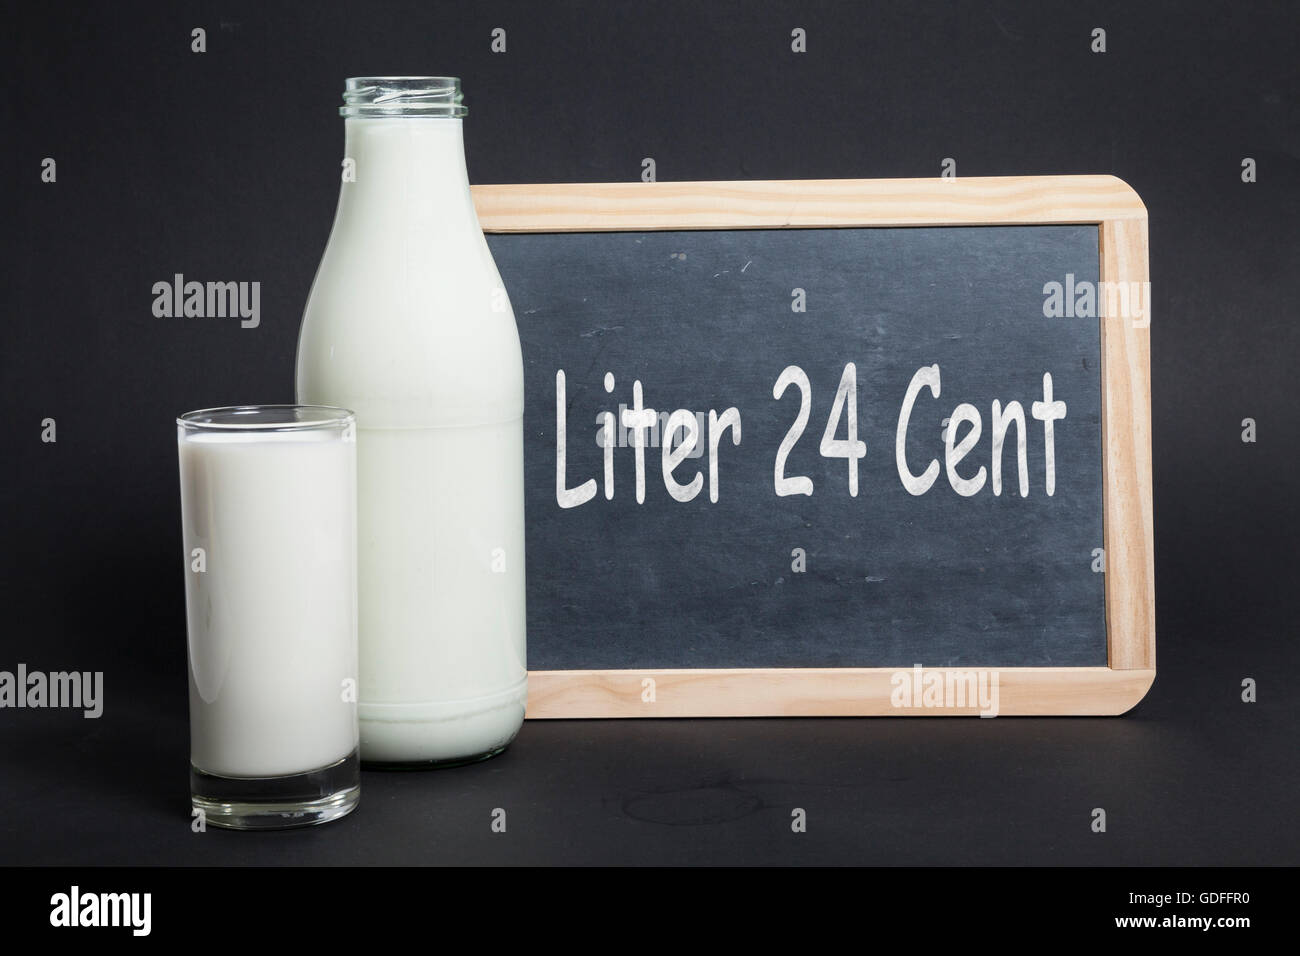 Milk price 24 cent Stock Photo